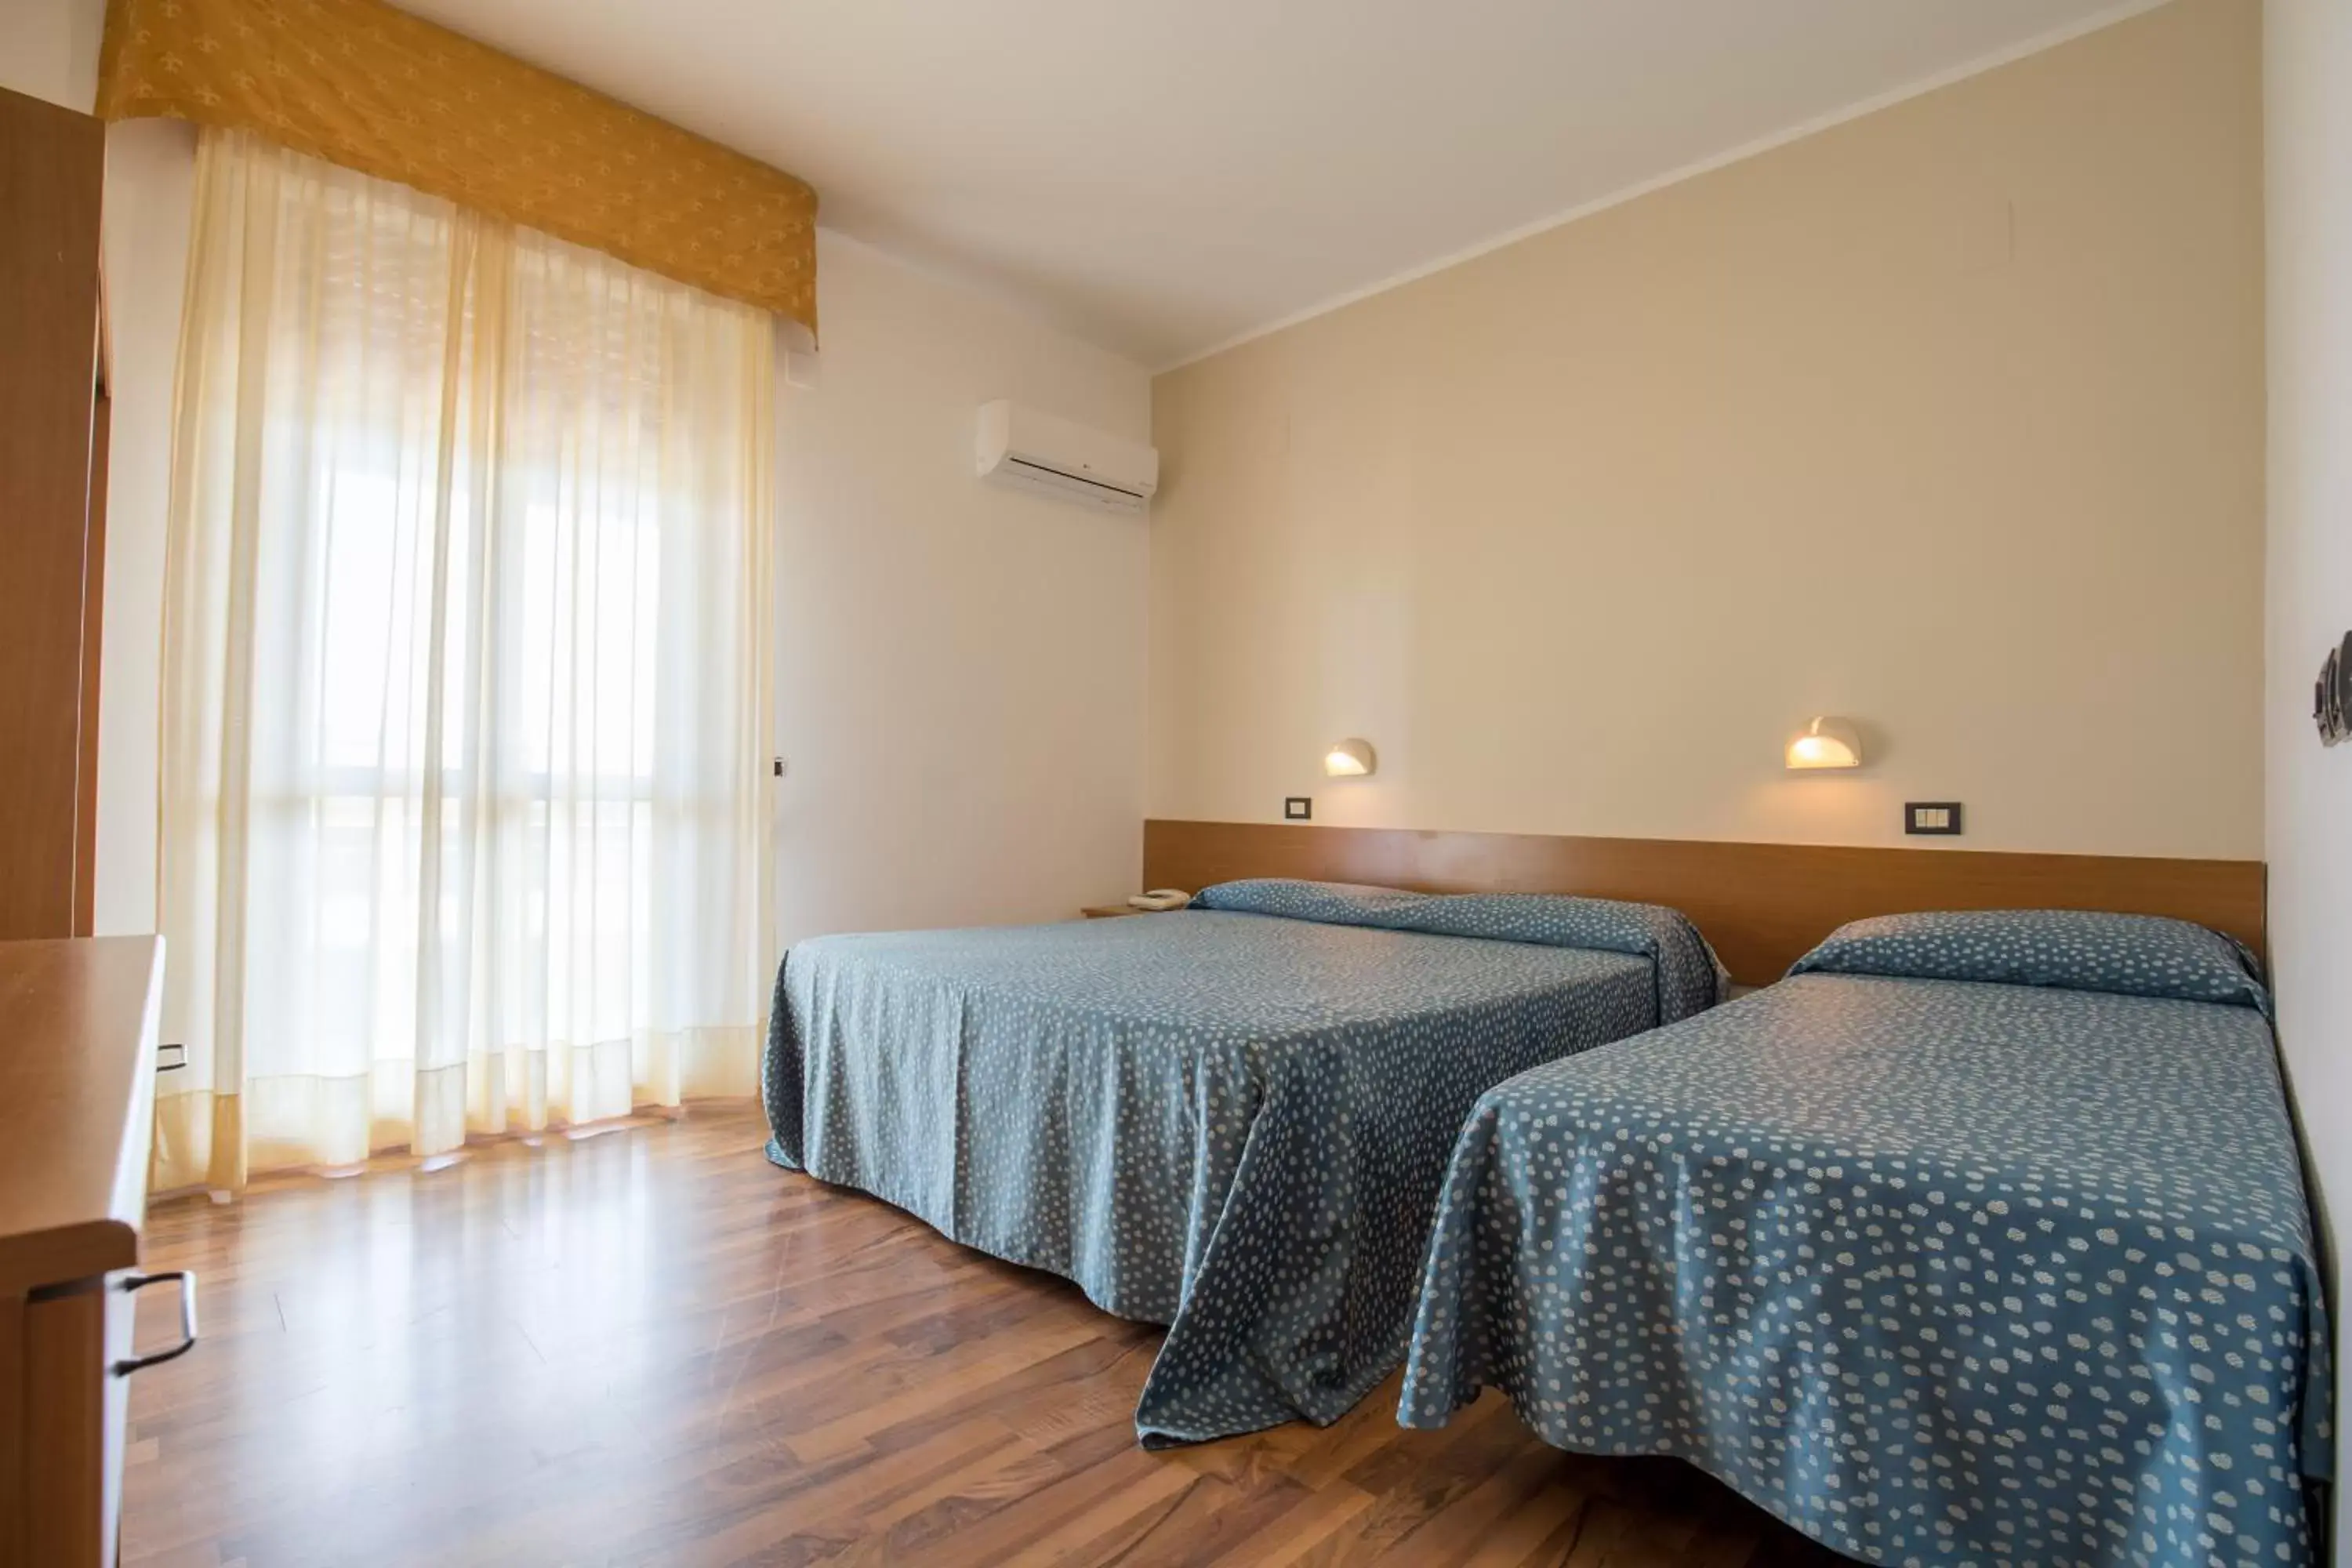 Bed, Room Photo in Hotel L'Aragosta